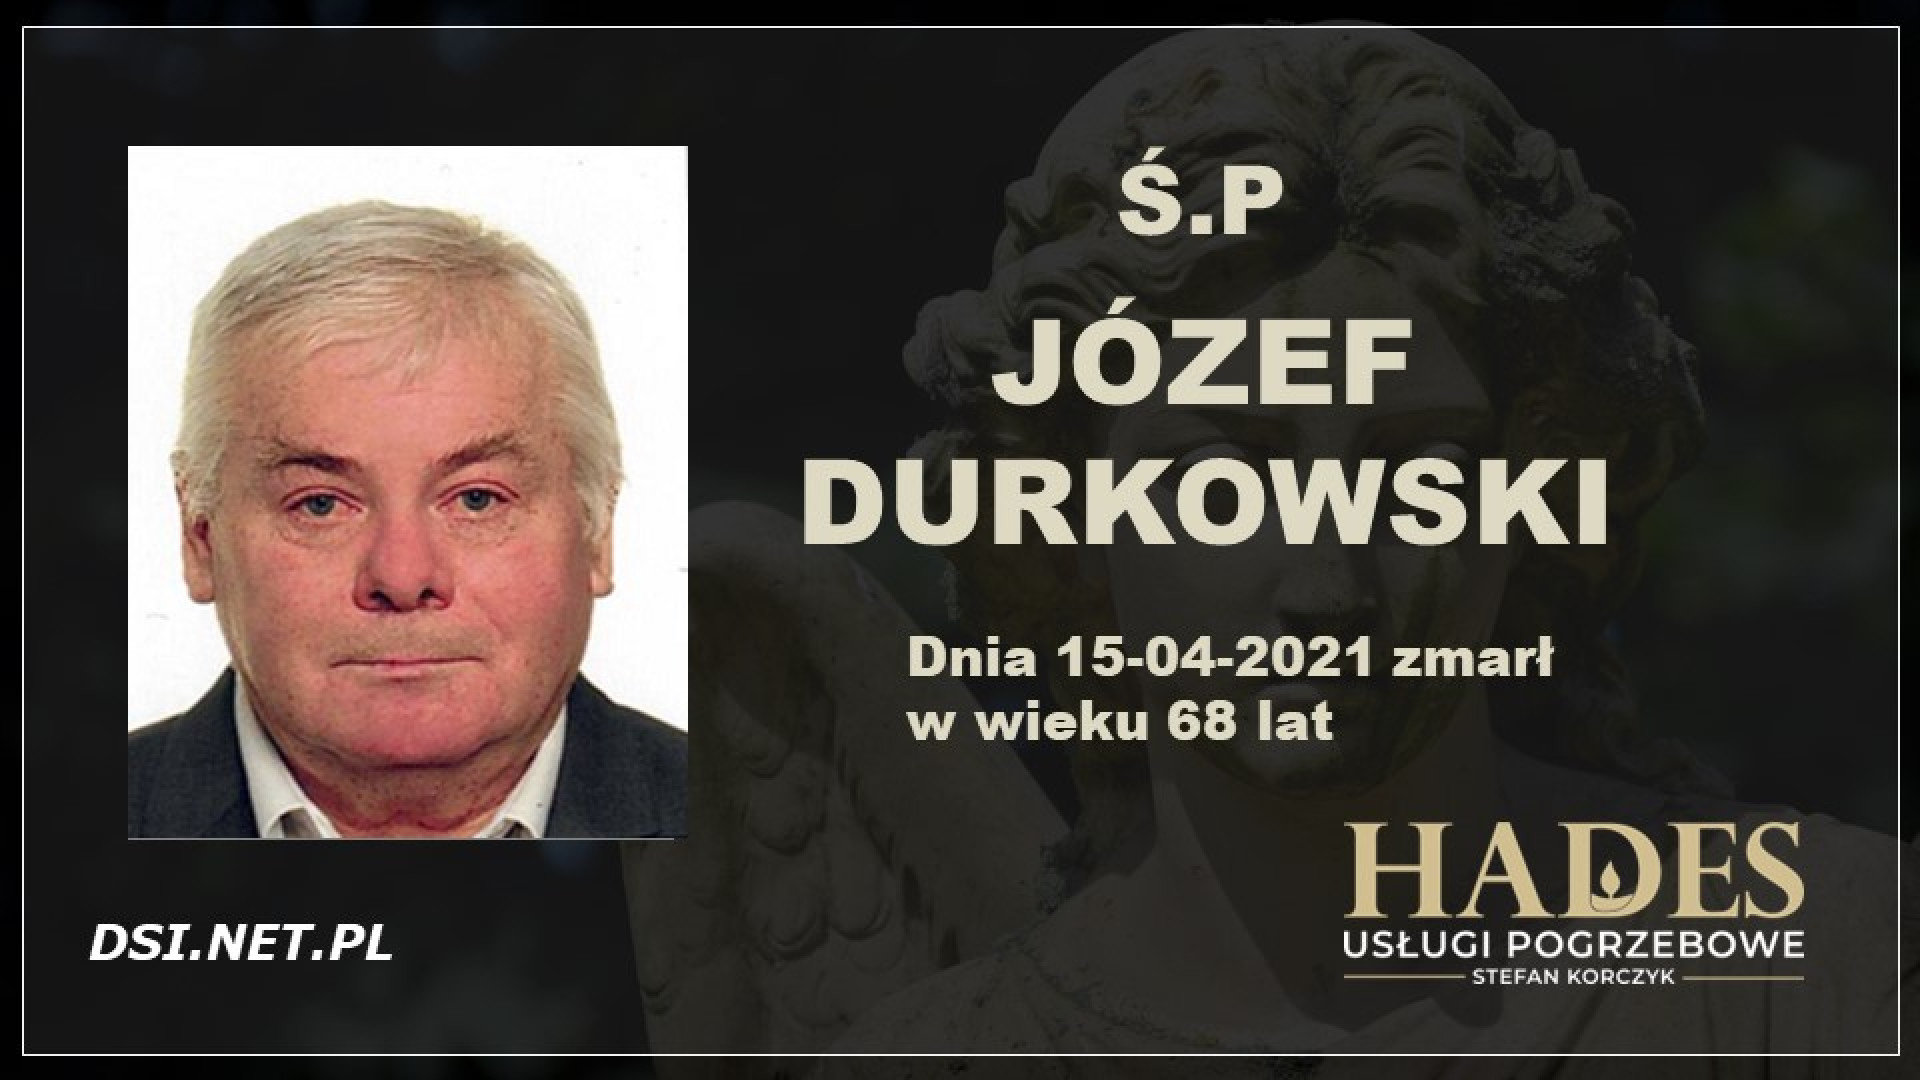 Ś.P. Józef Durkowski